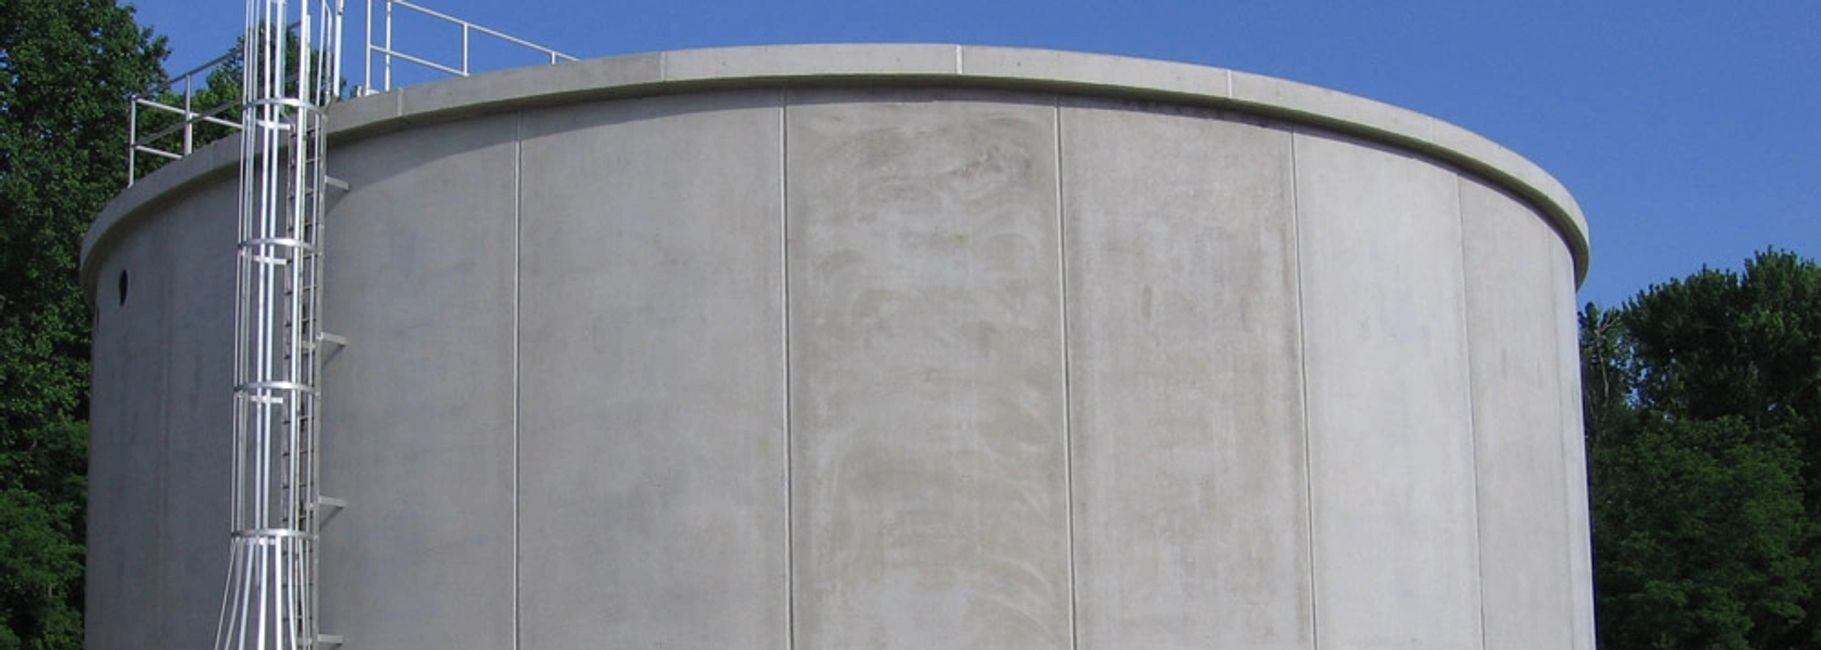 Waterproof concrete clarifier